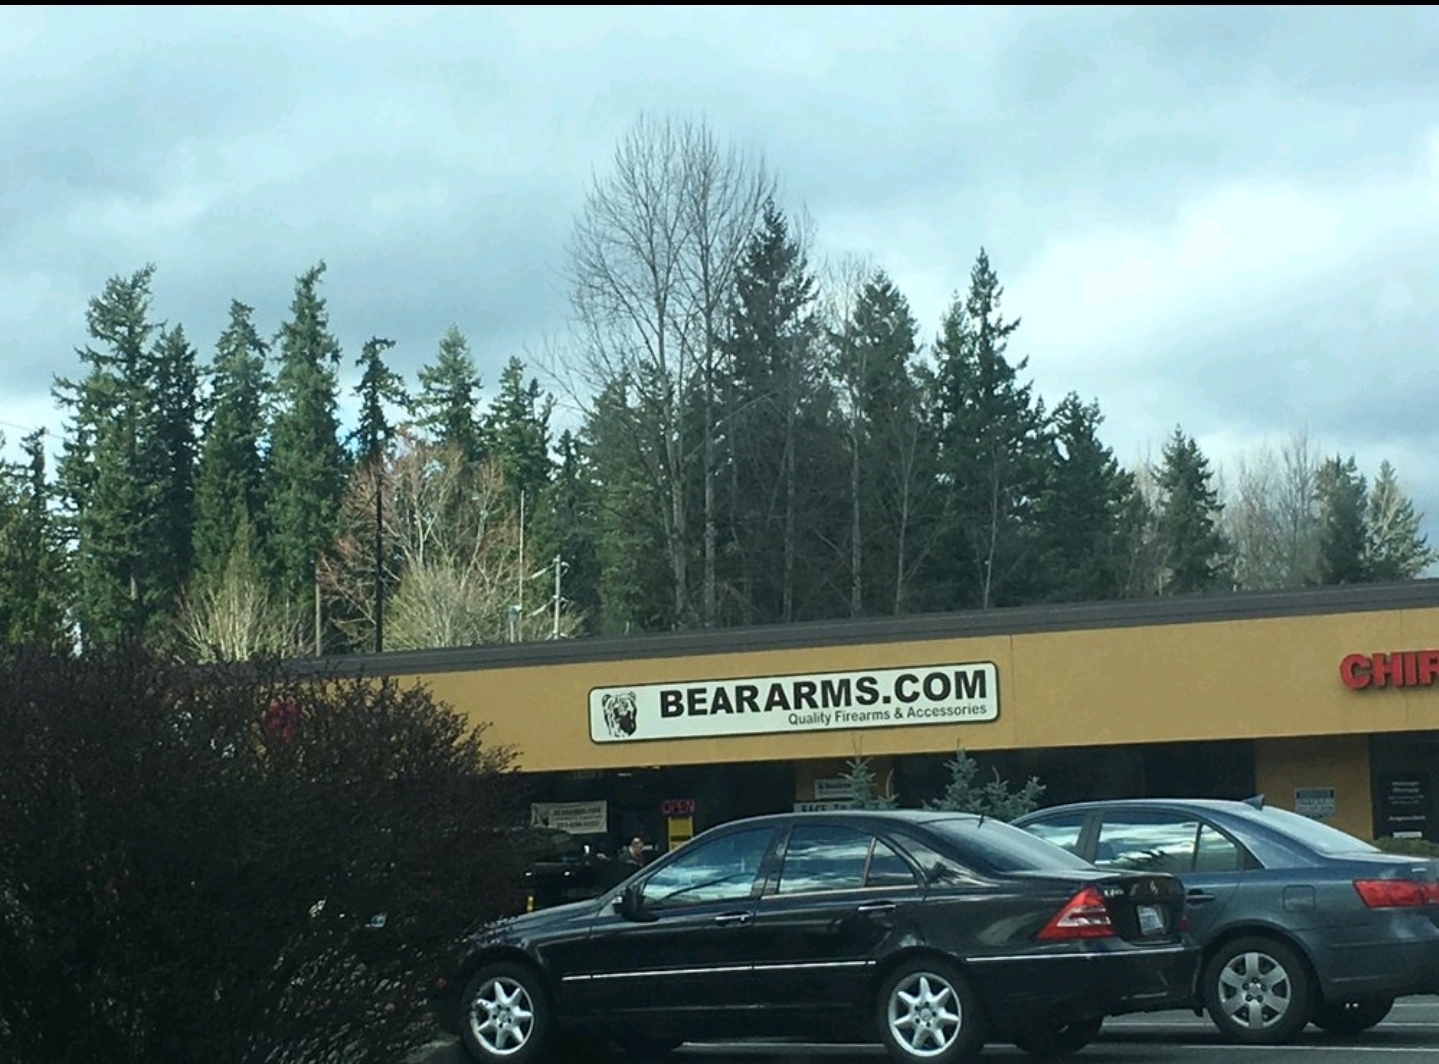 Bear Arms Inc / Beararms.com